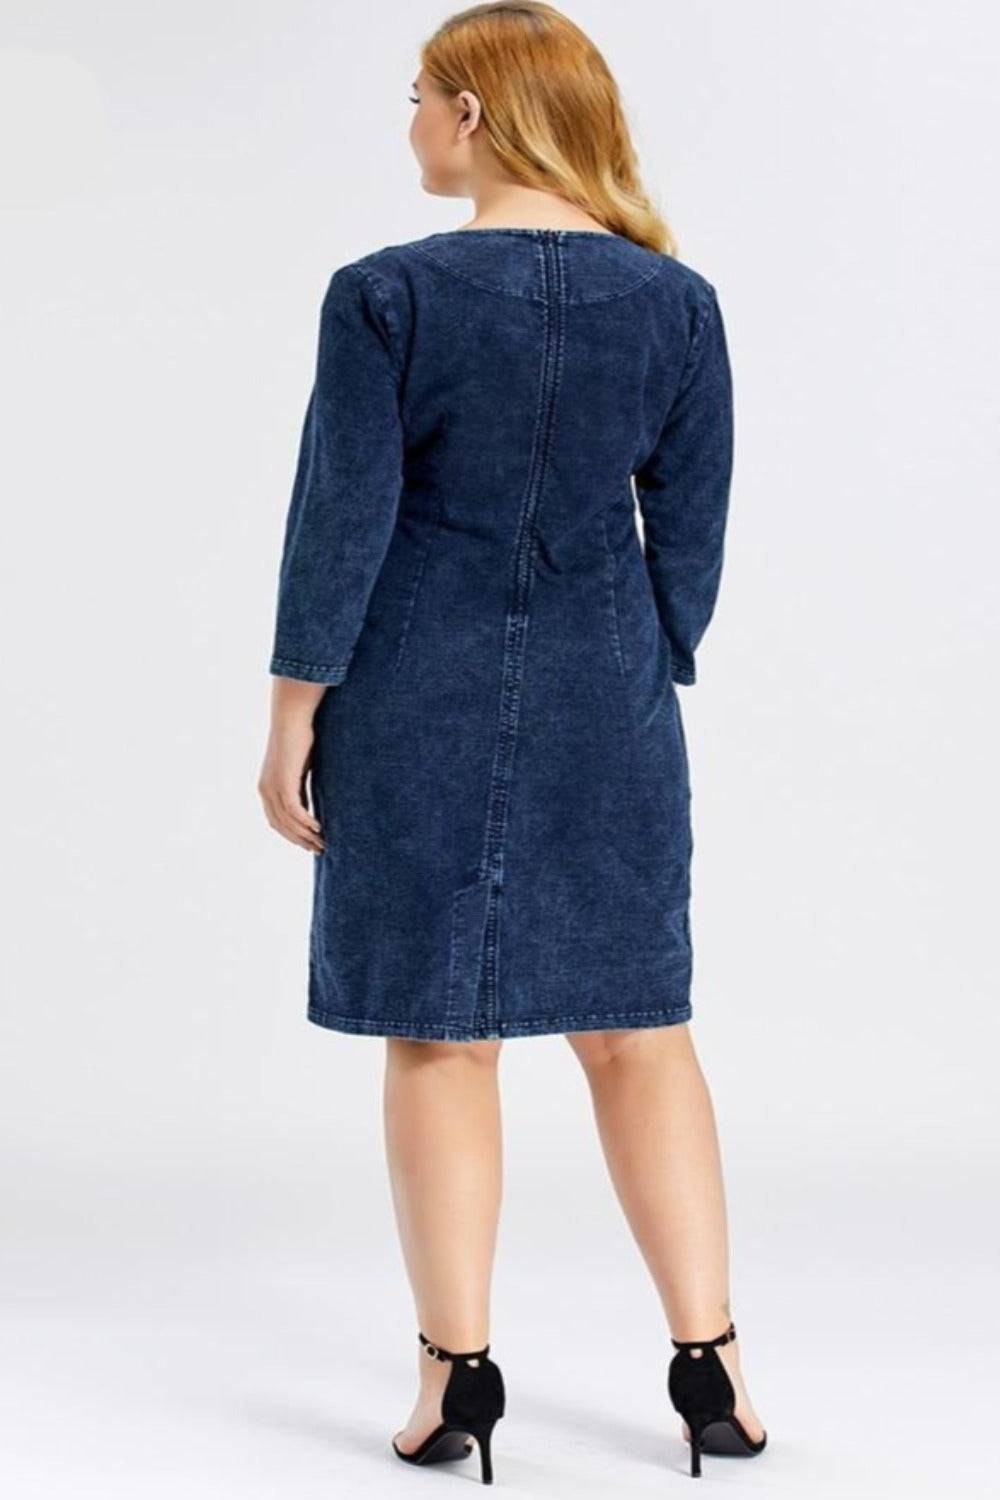 Blue Plus Size Long Sleeve Elastic Bodycon Slim Fit Midi Denim Dress - TGC Boutique - Plus Size Denim Dress